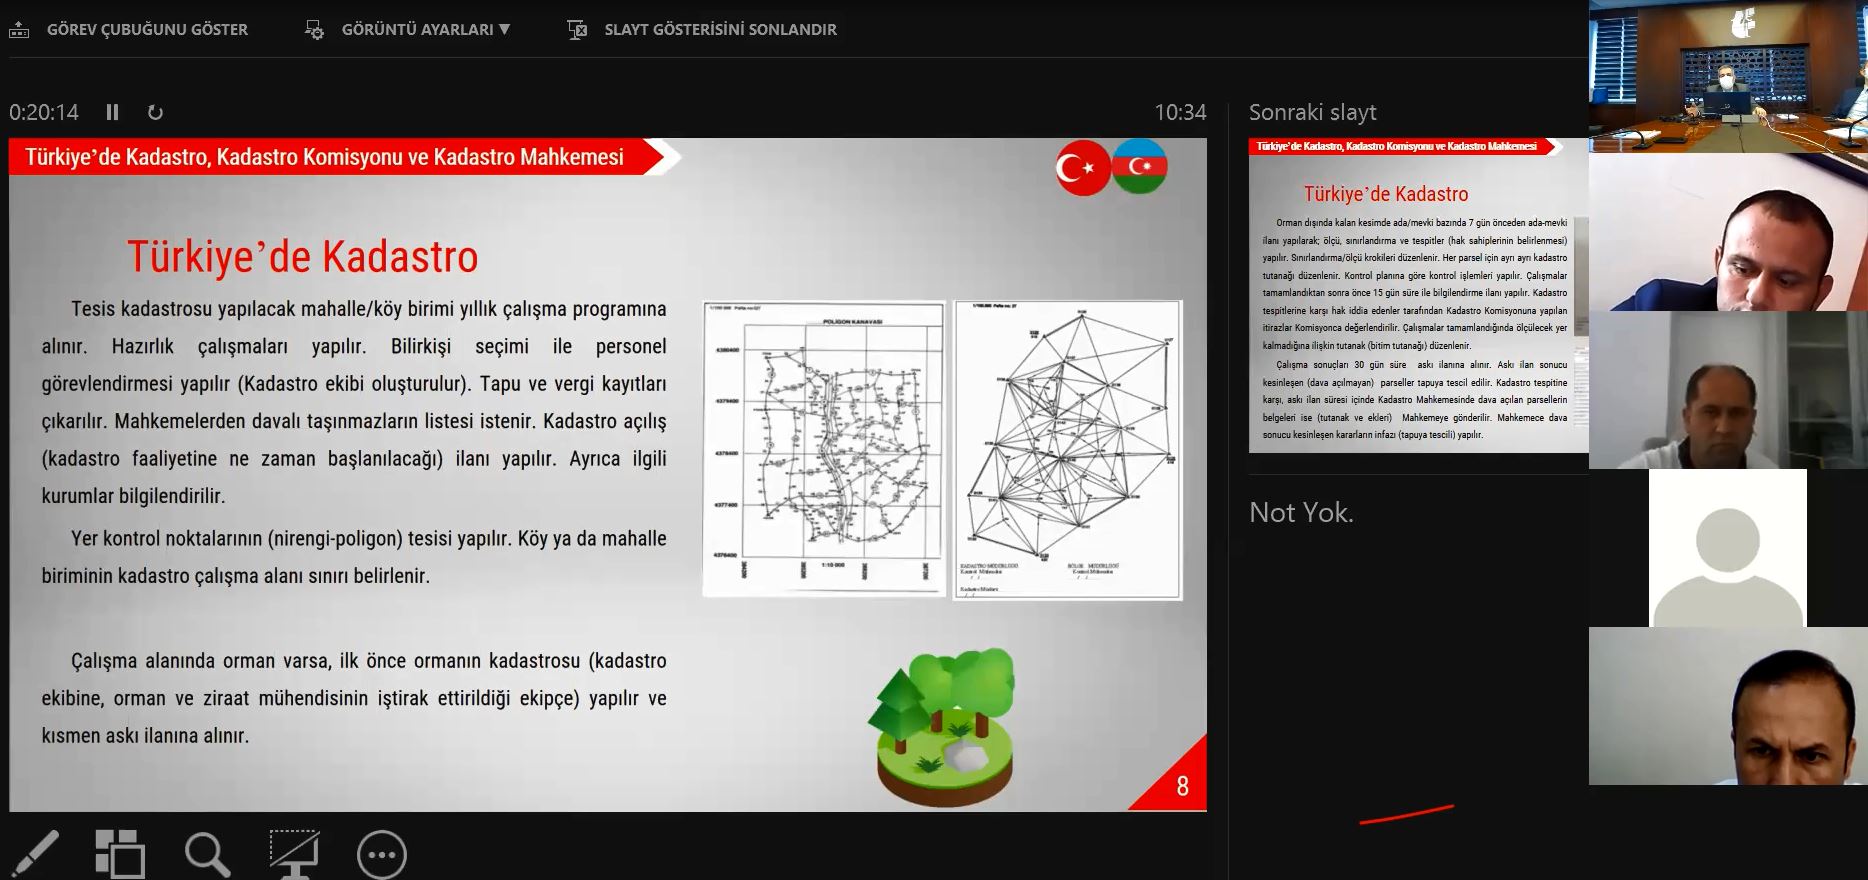 Türkiye-Azerbaycan "Tapu ve Kadastro Çalıştayı" resim 3